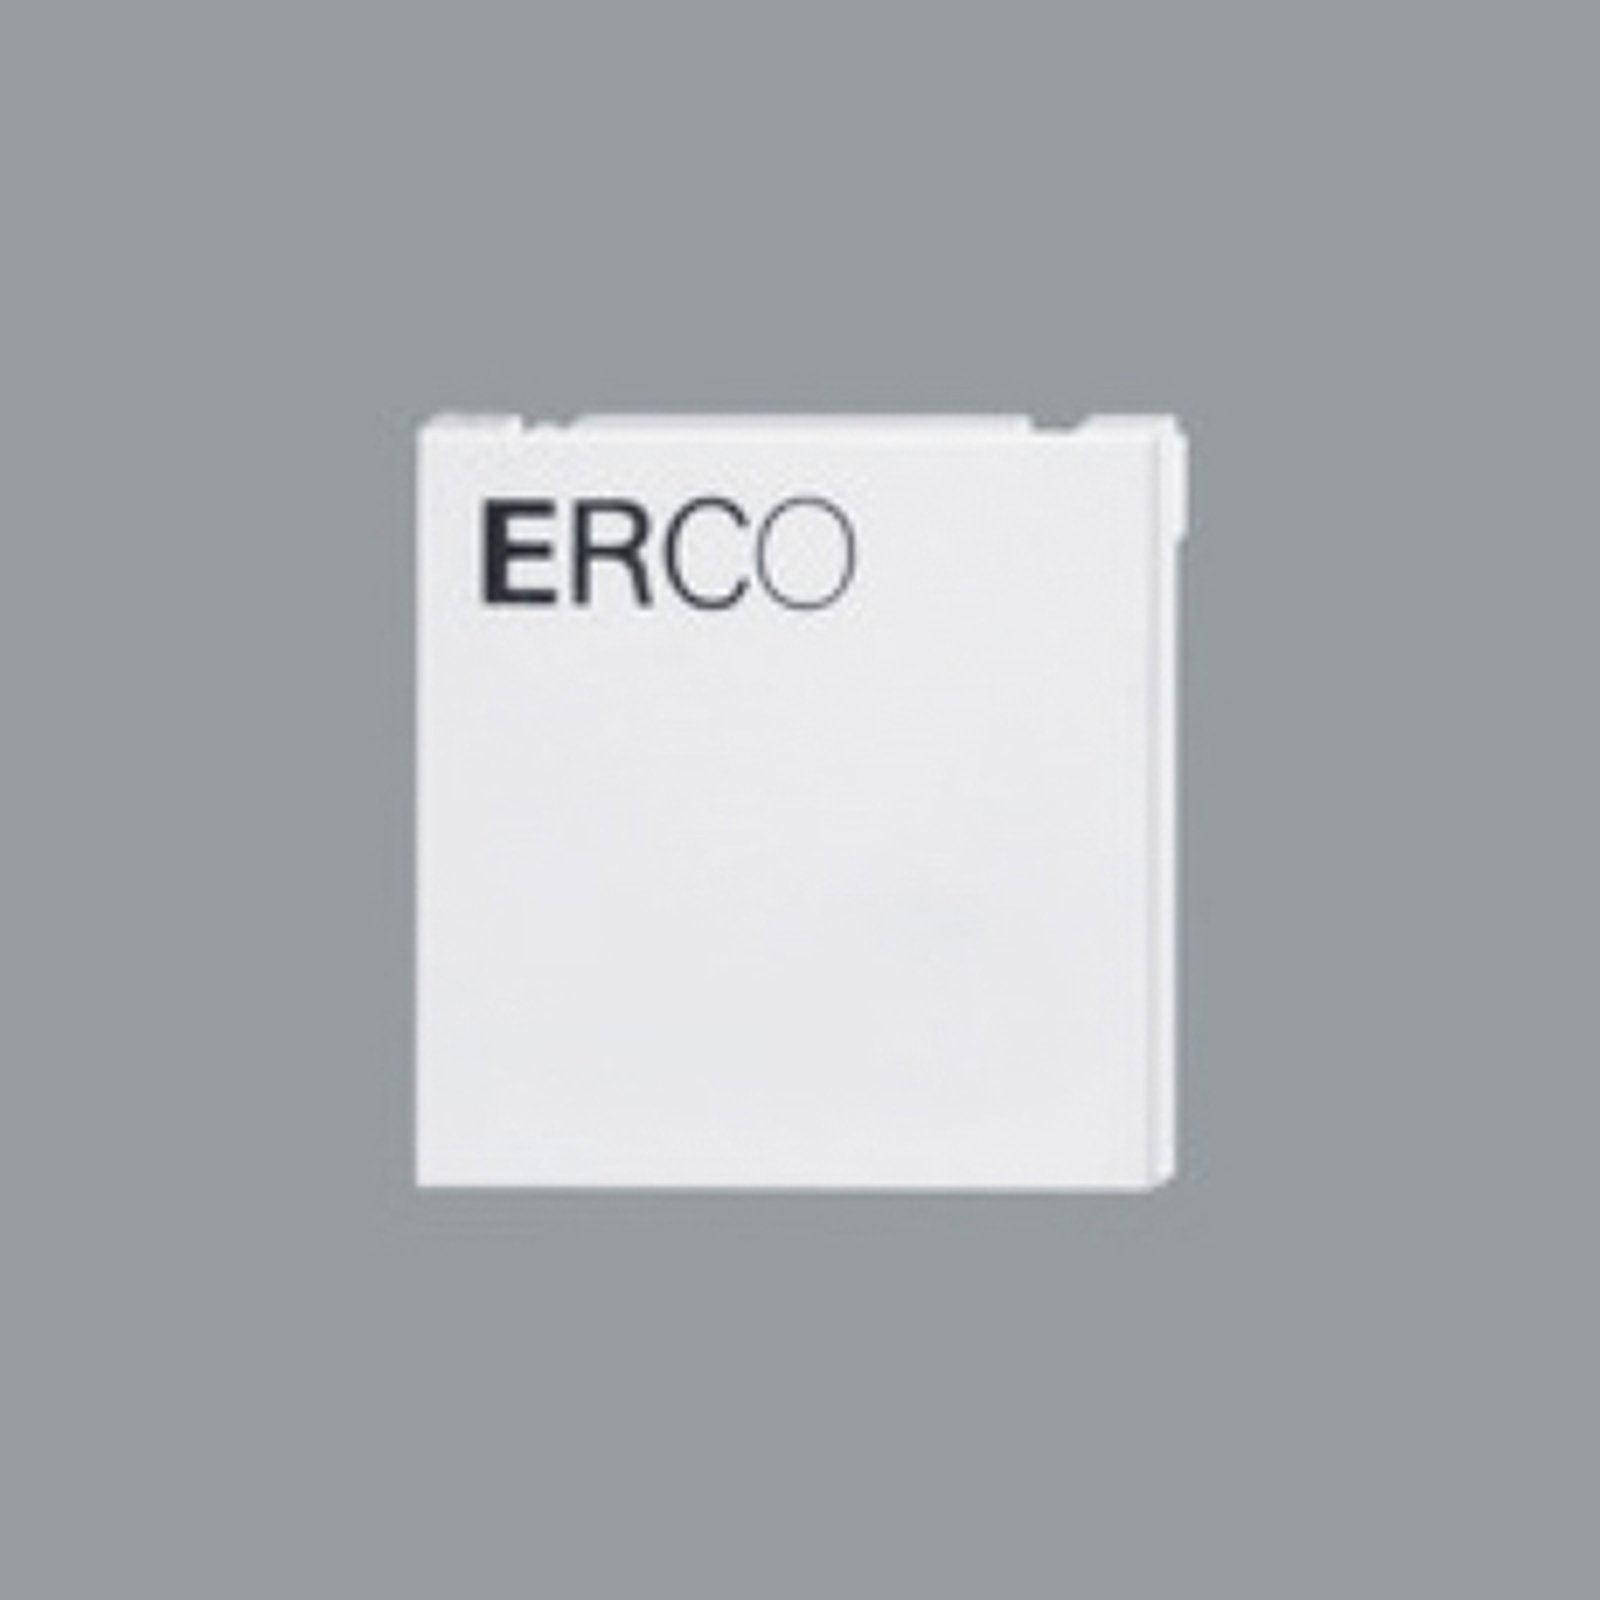 ERCO endeplade til 3-fase skinne, hvid